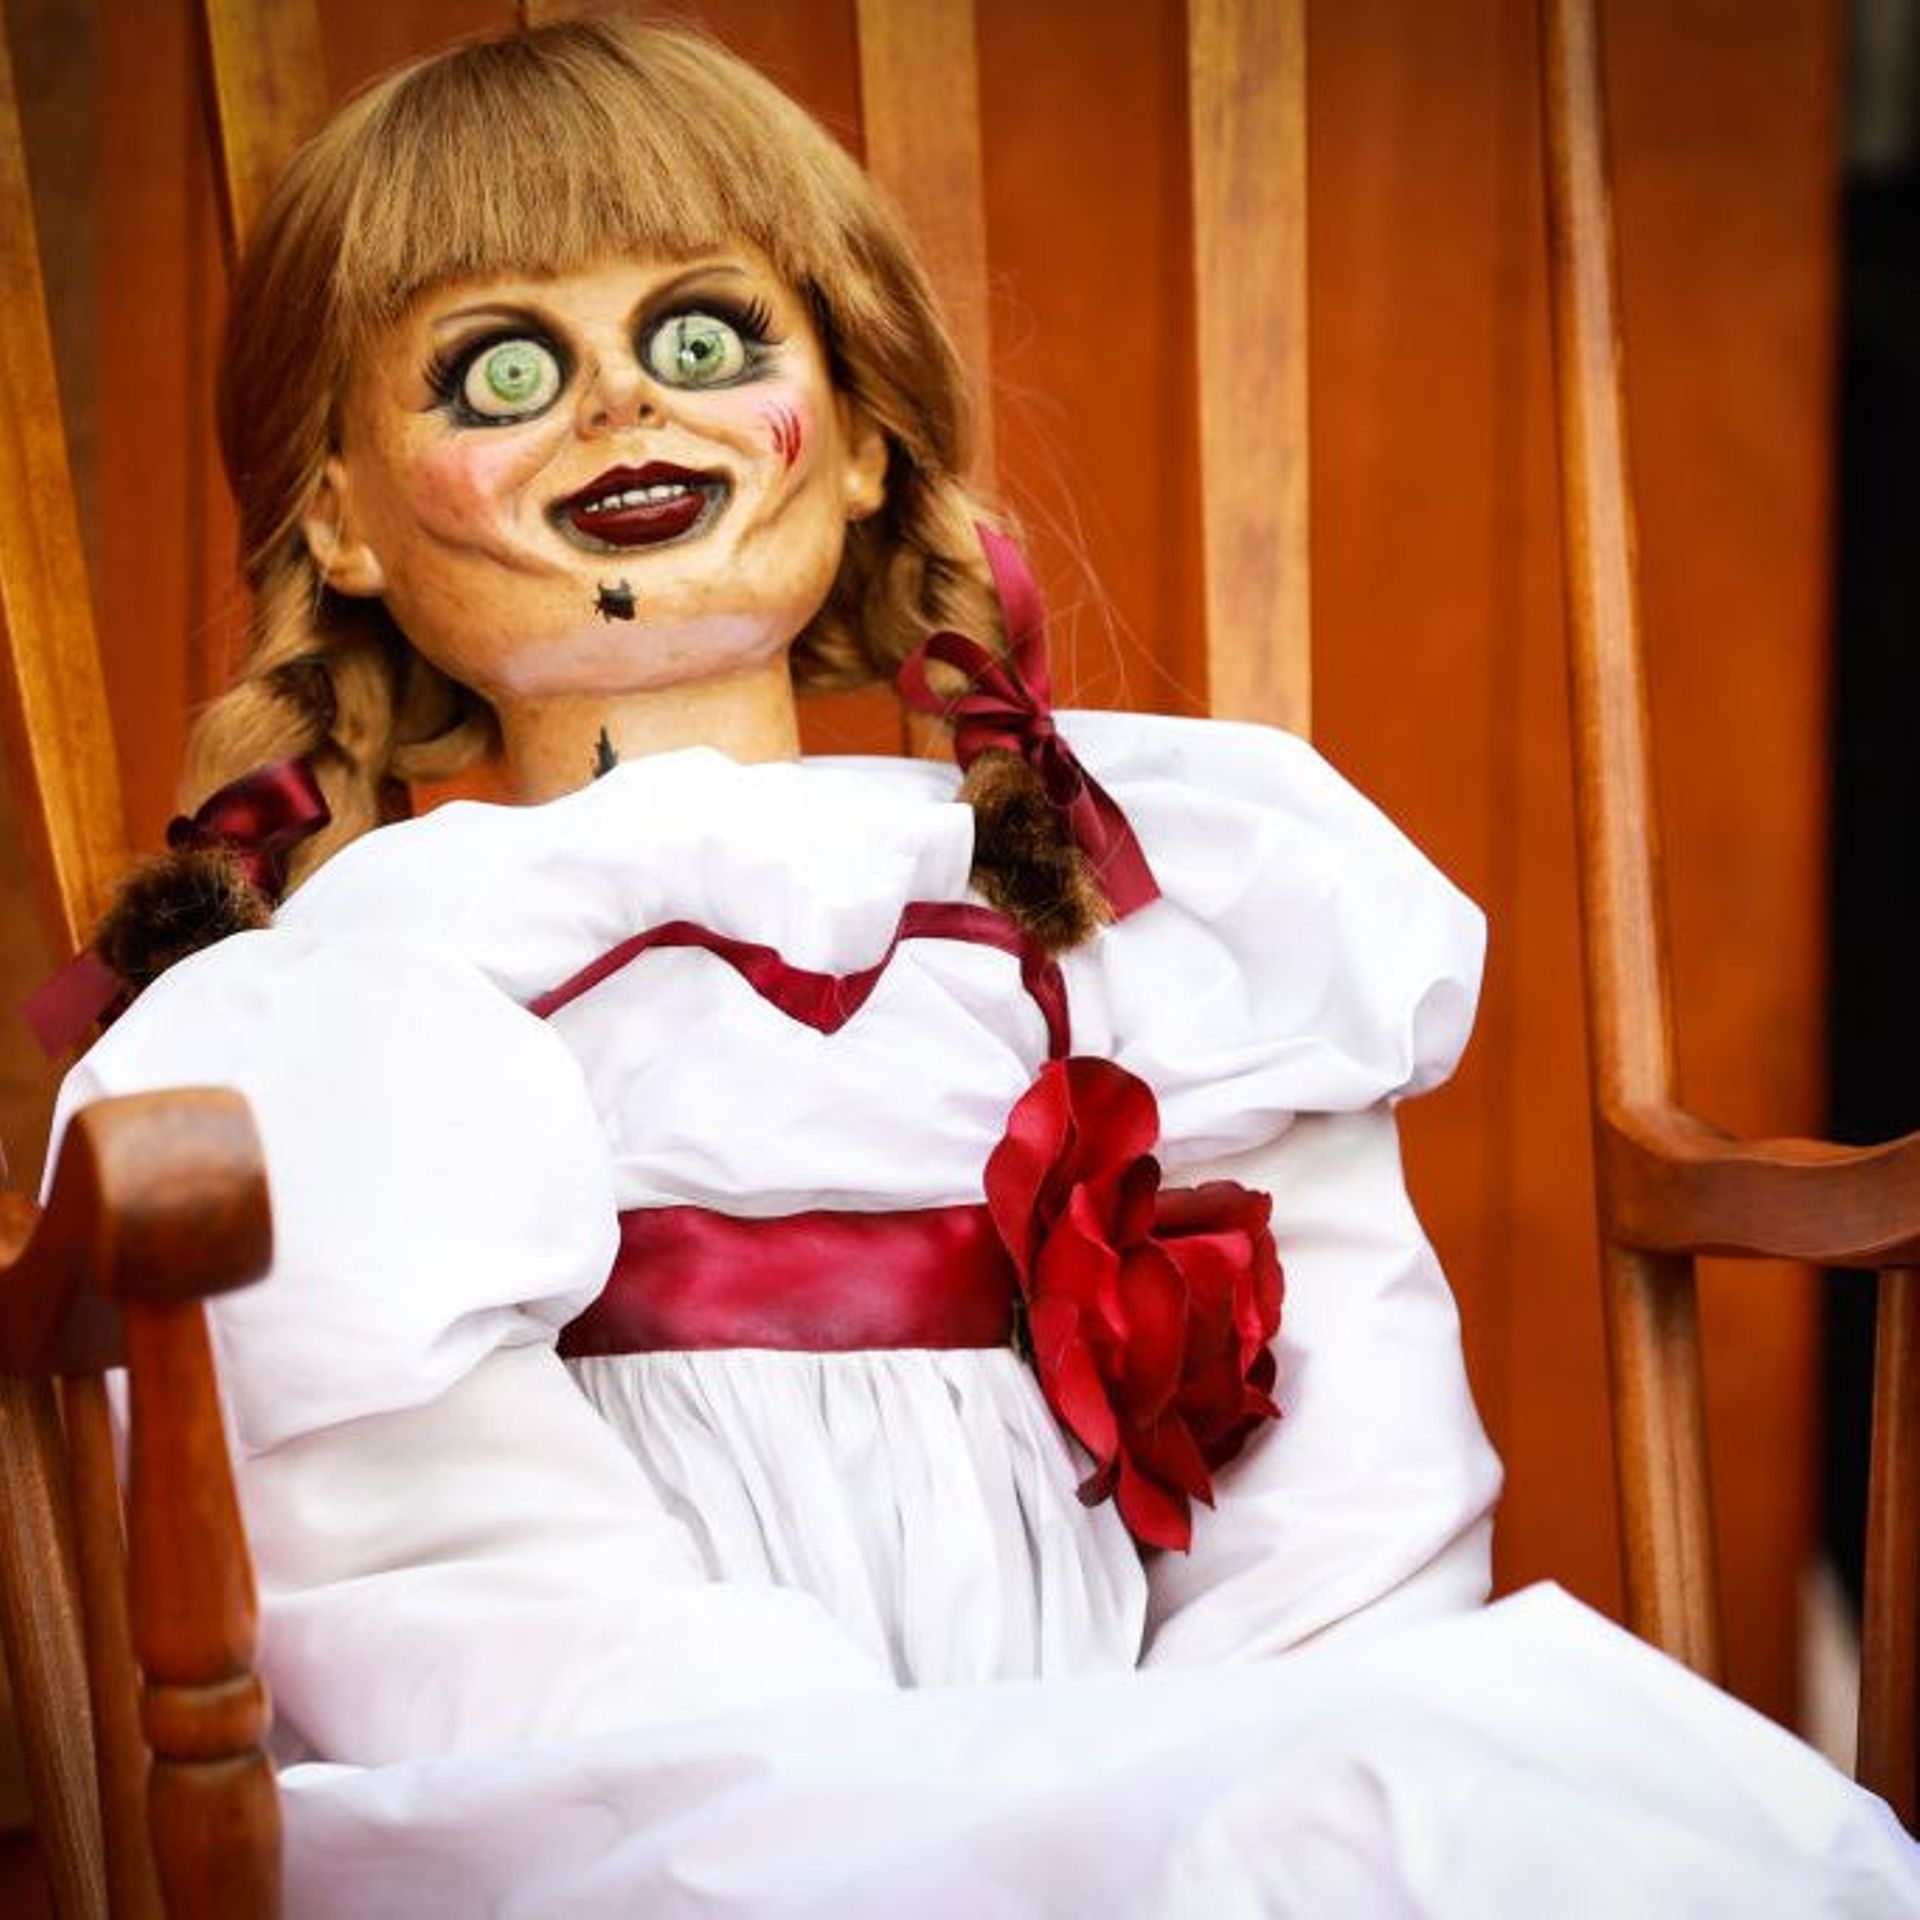 Annabelle 3 : ouvrez l'oeil, la vraie poupée apparaît dans le film ! -  CinéSérie